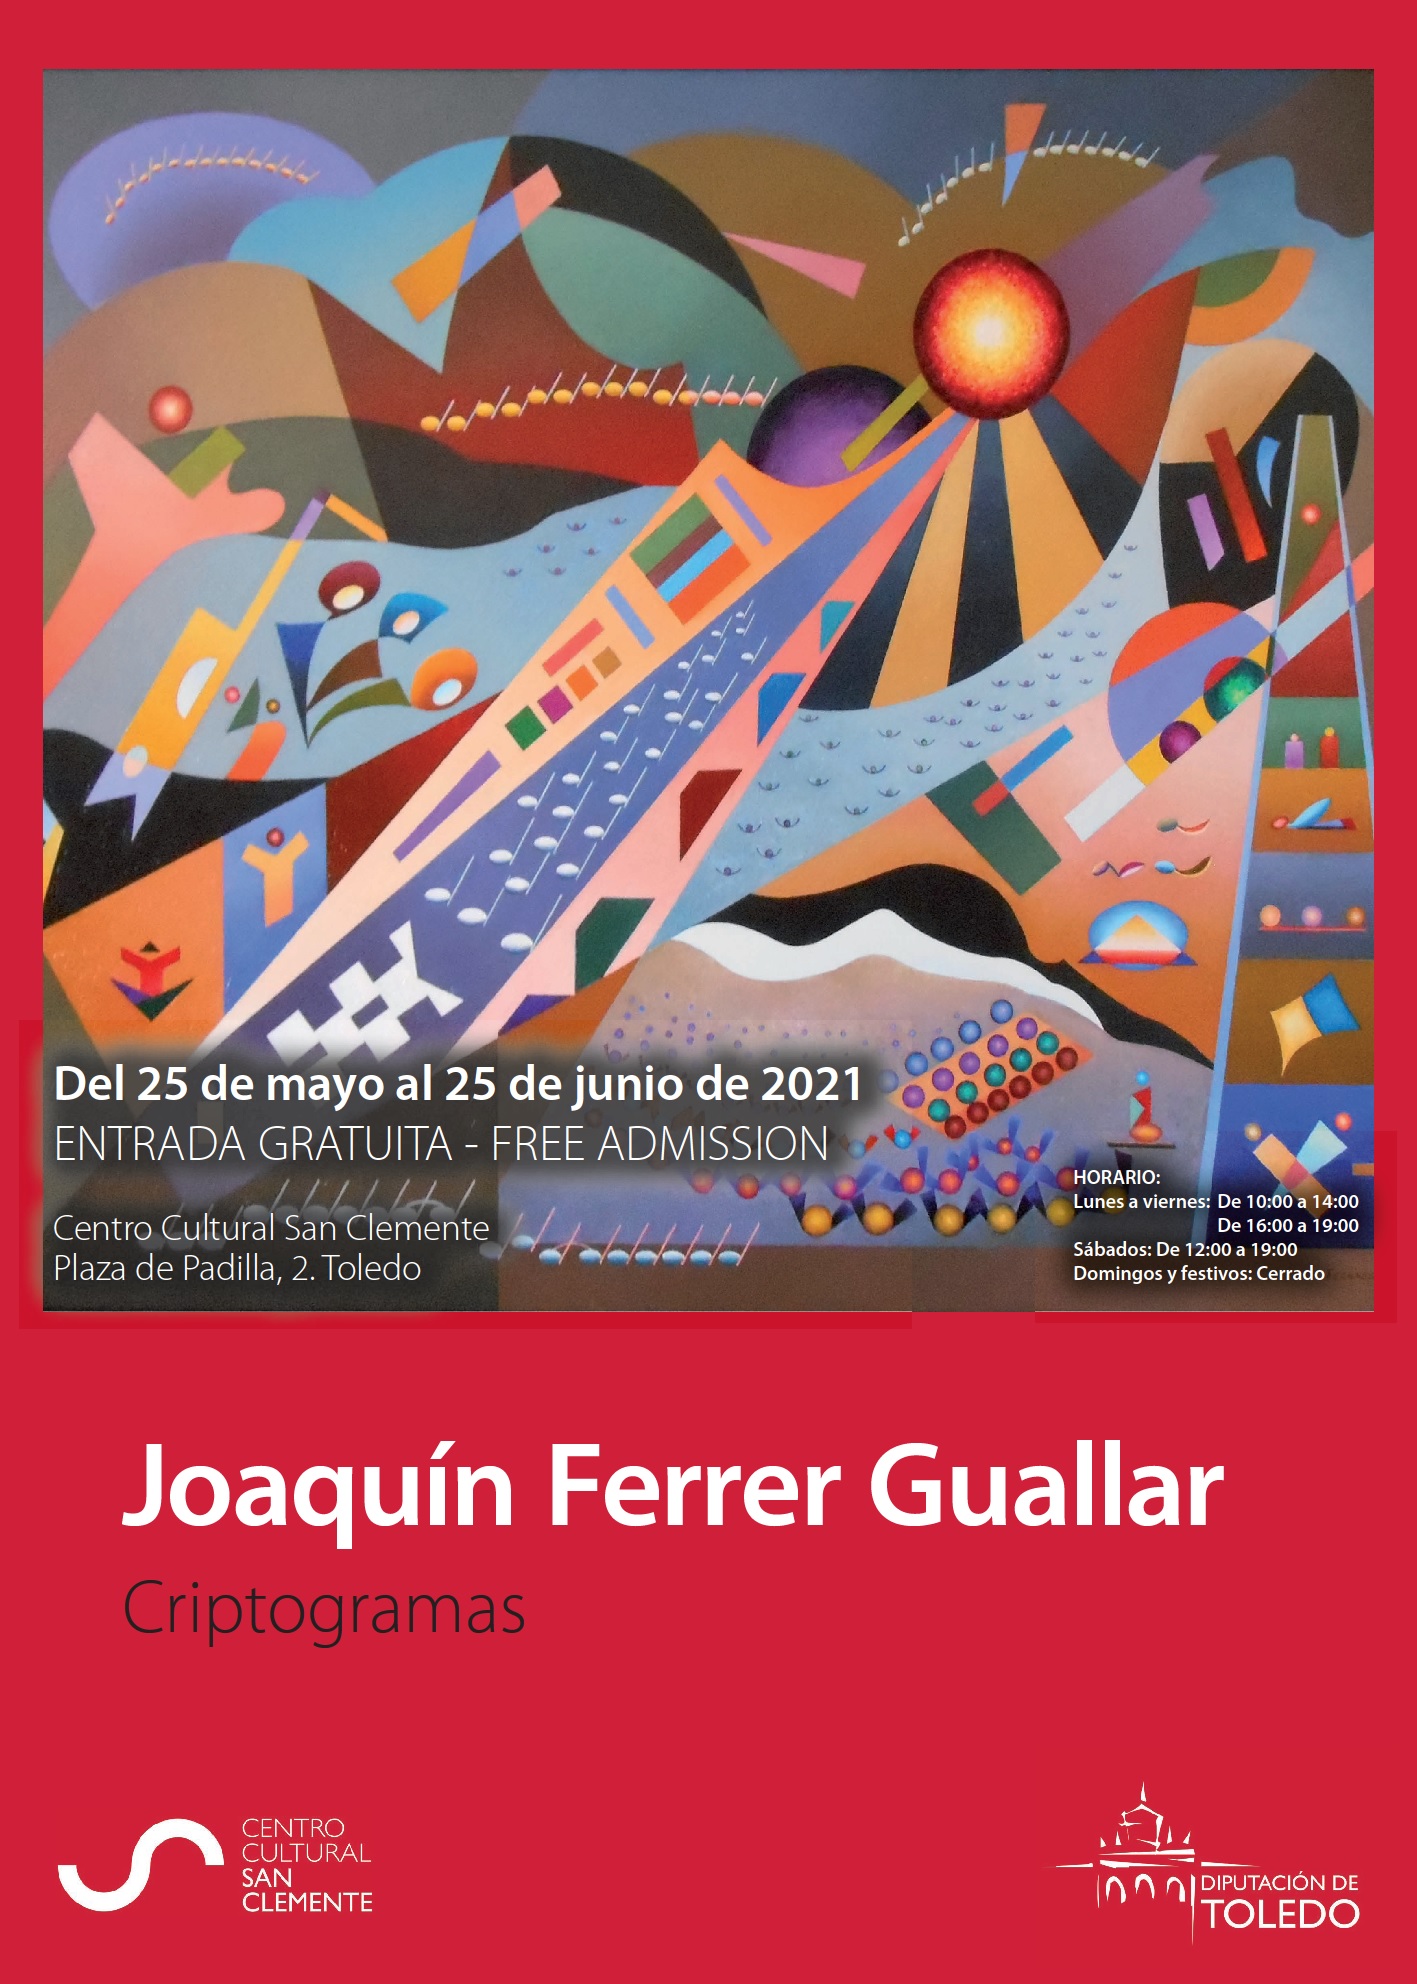 07 - Joaquín Ferrer